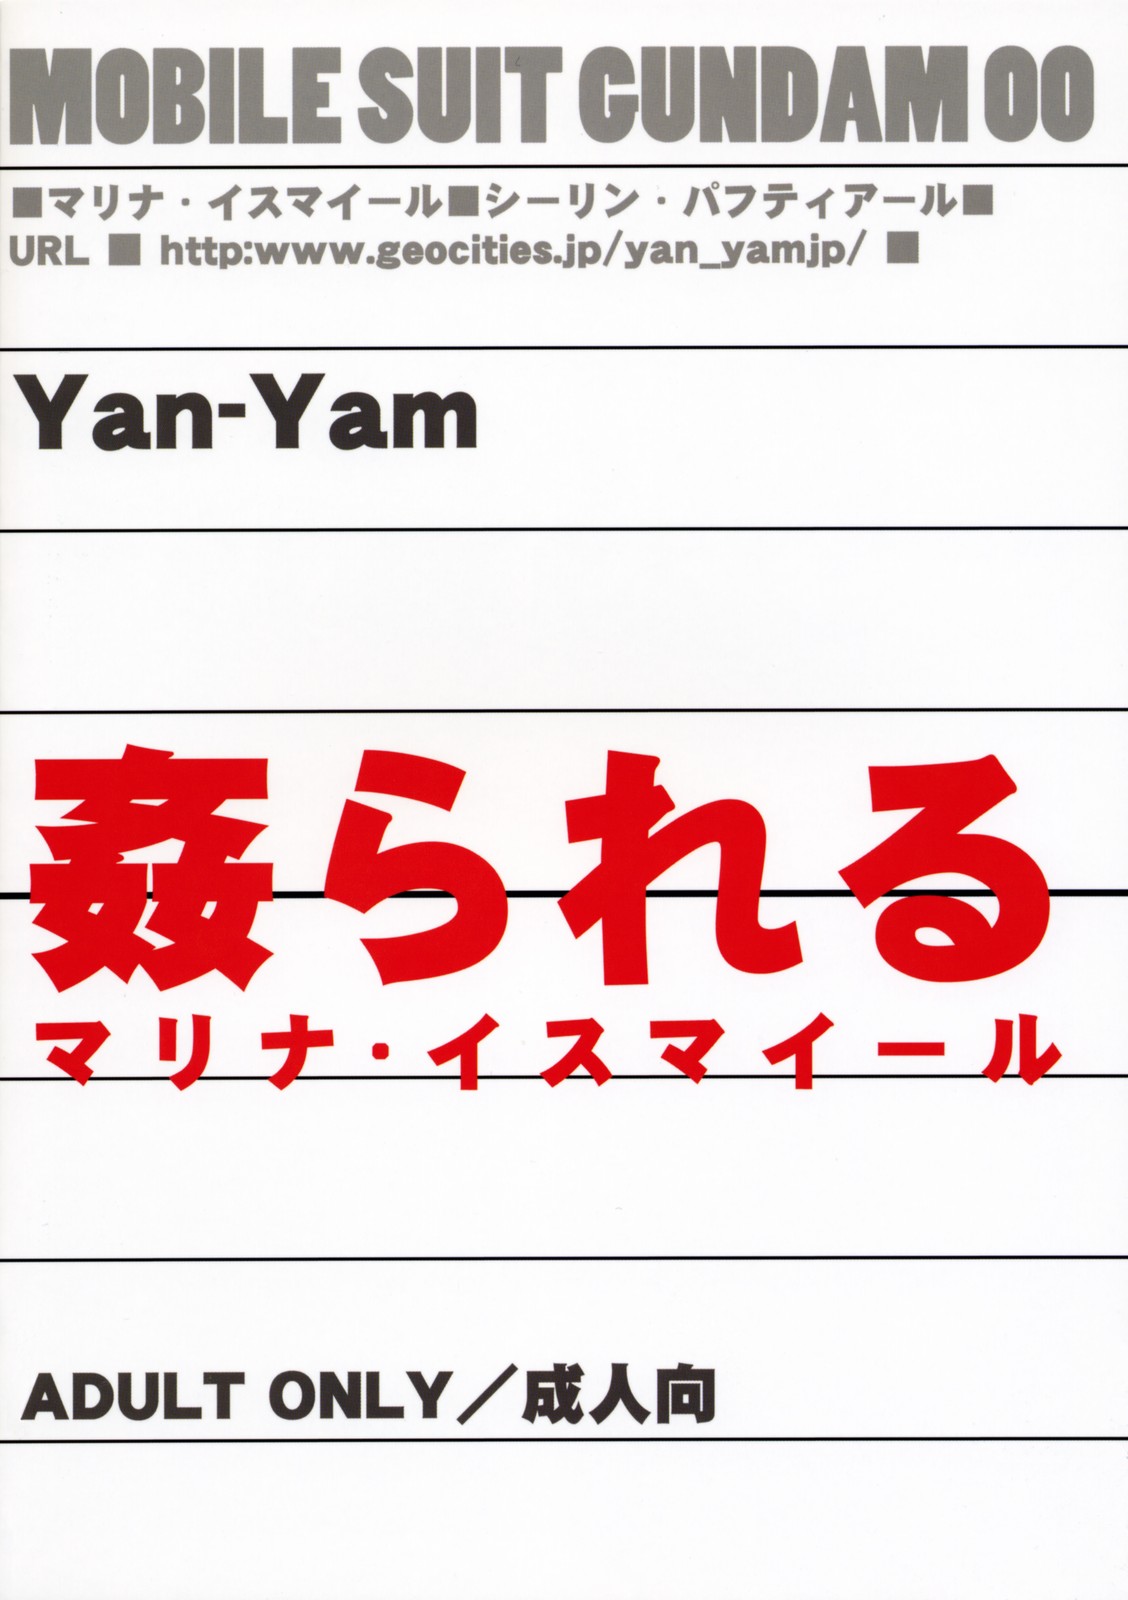 [Yan-Yam] kan rareru - marina. isumairu -(Gundam00){masterbloodfer} 